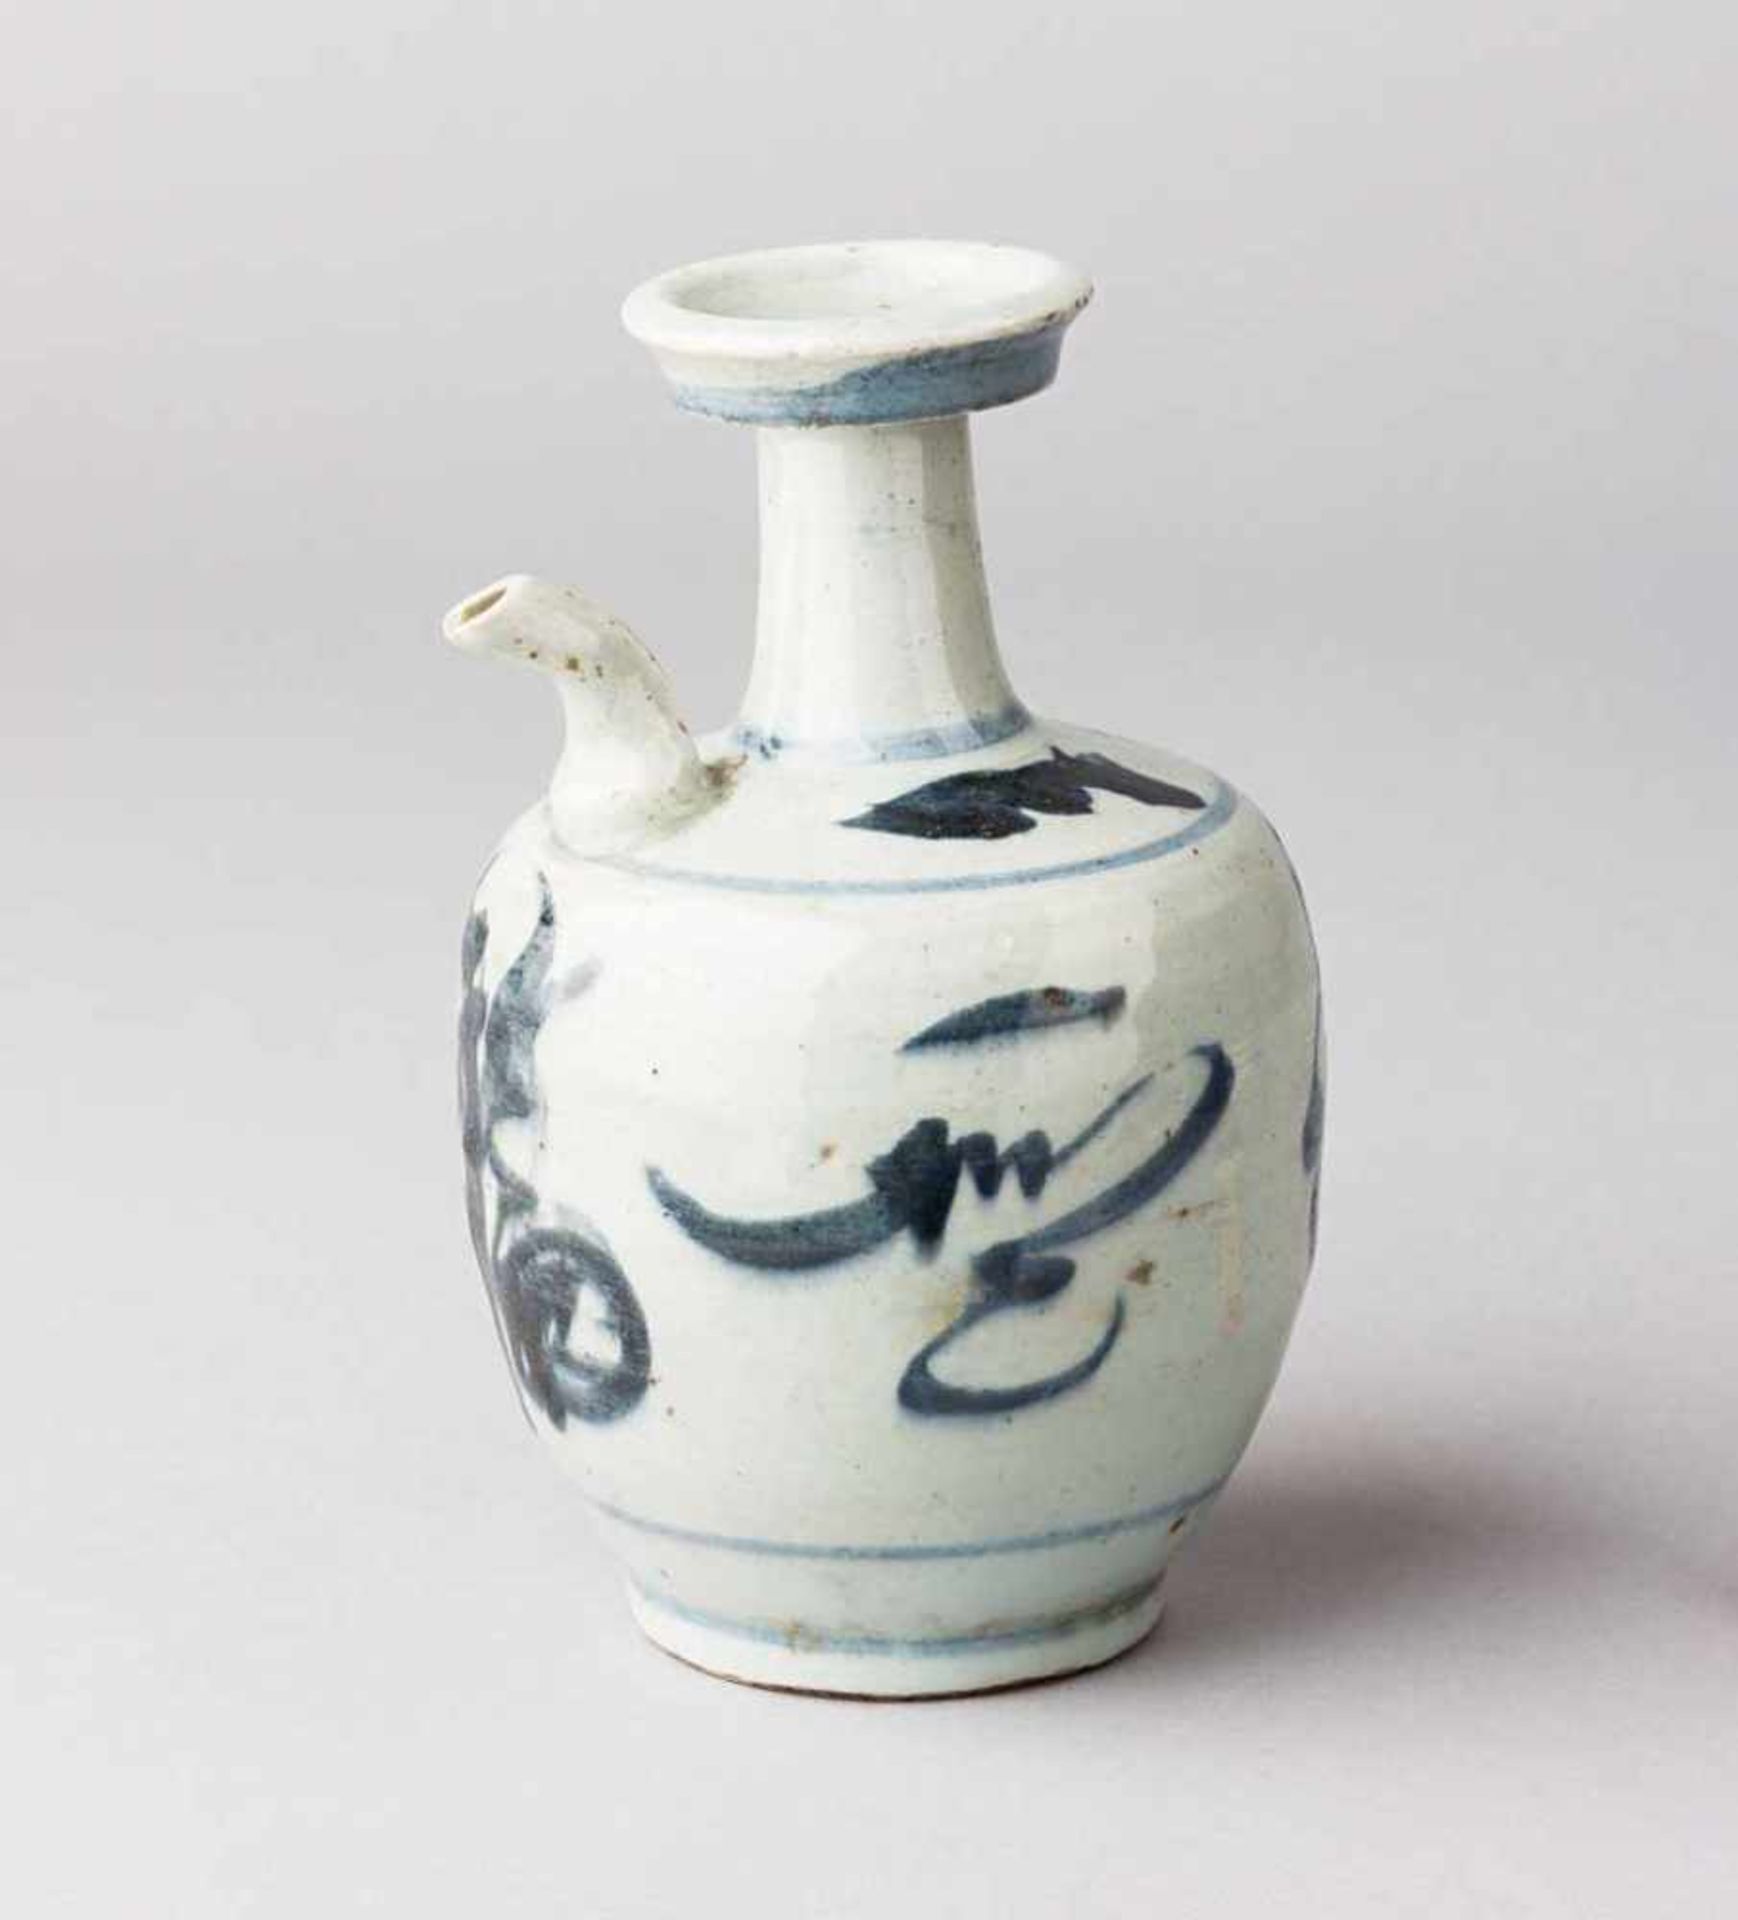 Ming-Kanne. Balusterform. Unterglasurblaue Bemalung. China, späte Ming-Dynastie, um 1600. H 17,5 cm